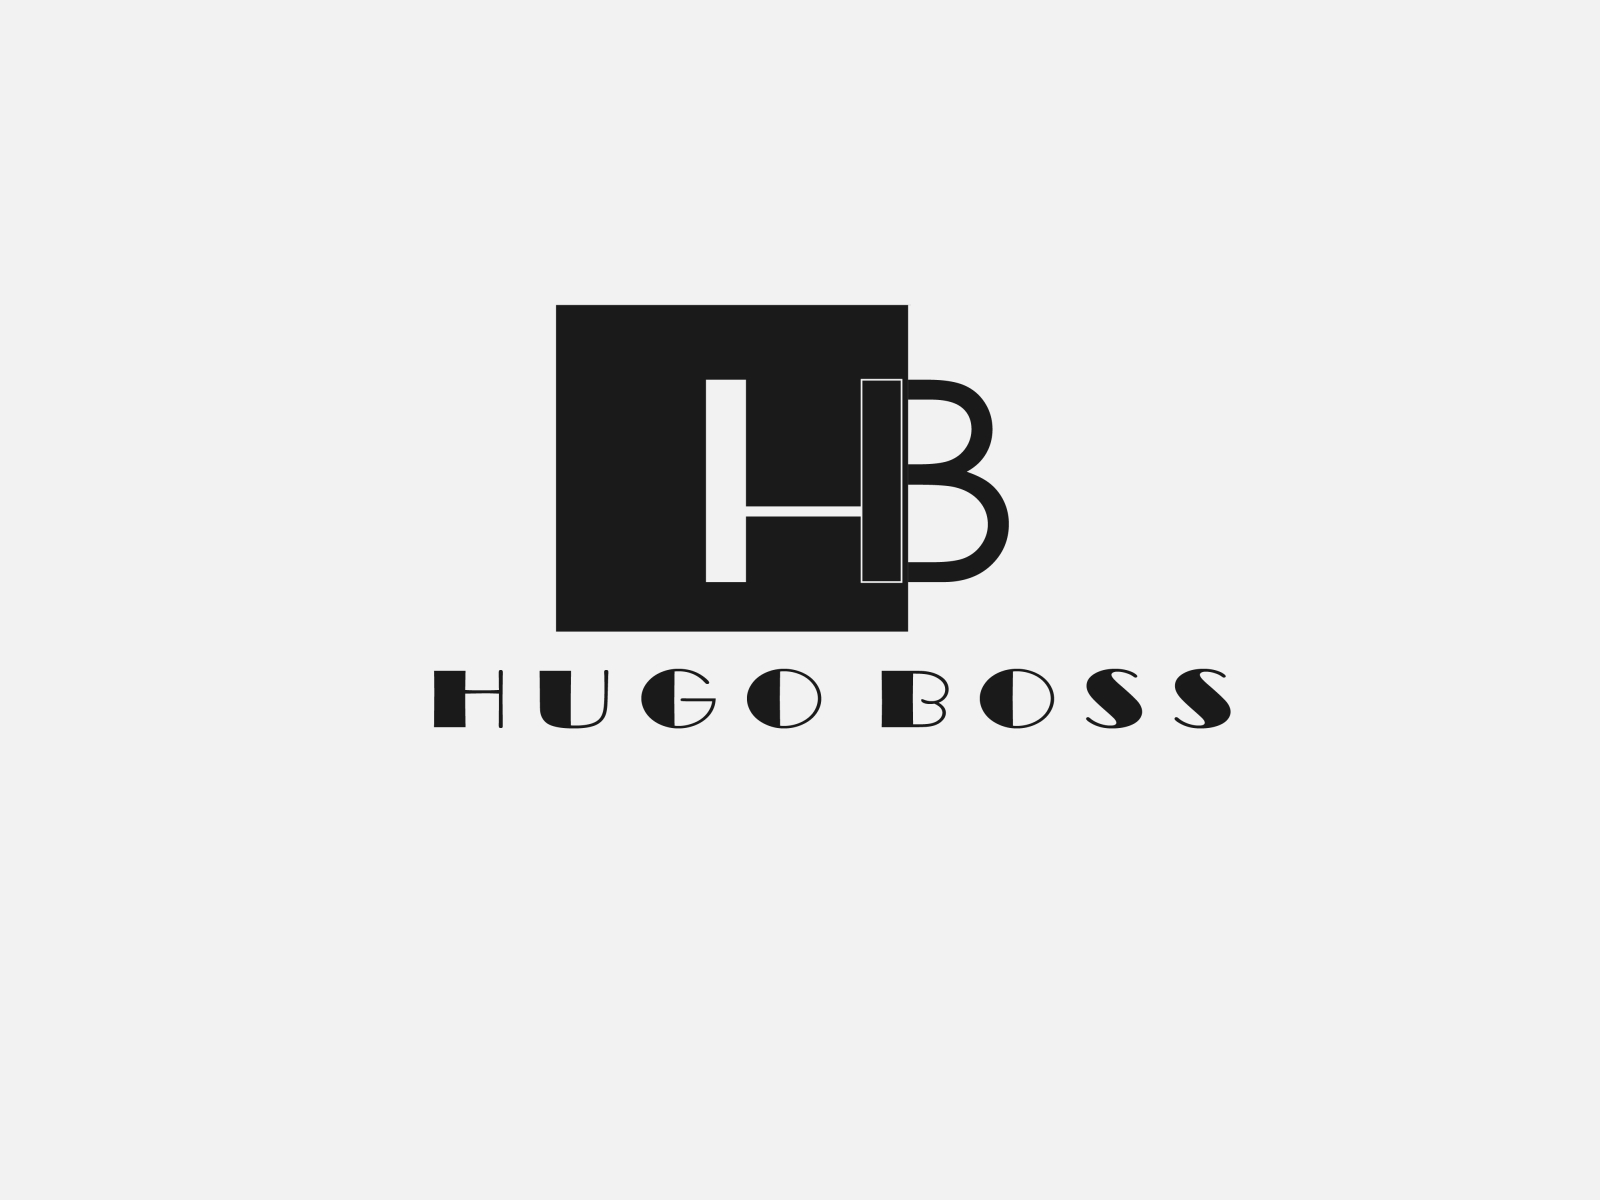 Hugo Boss by Muhammad.Hamza on Dribbble